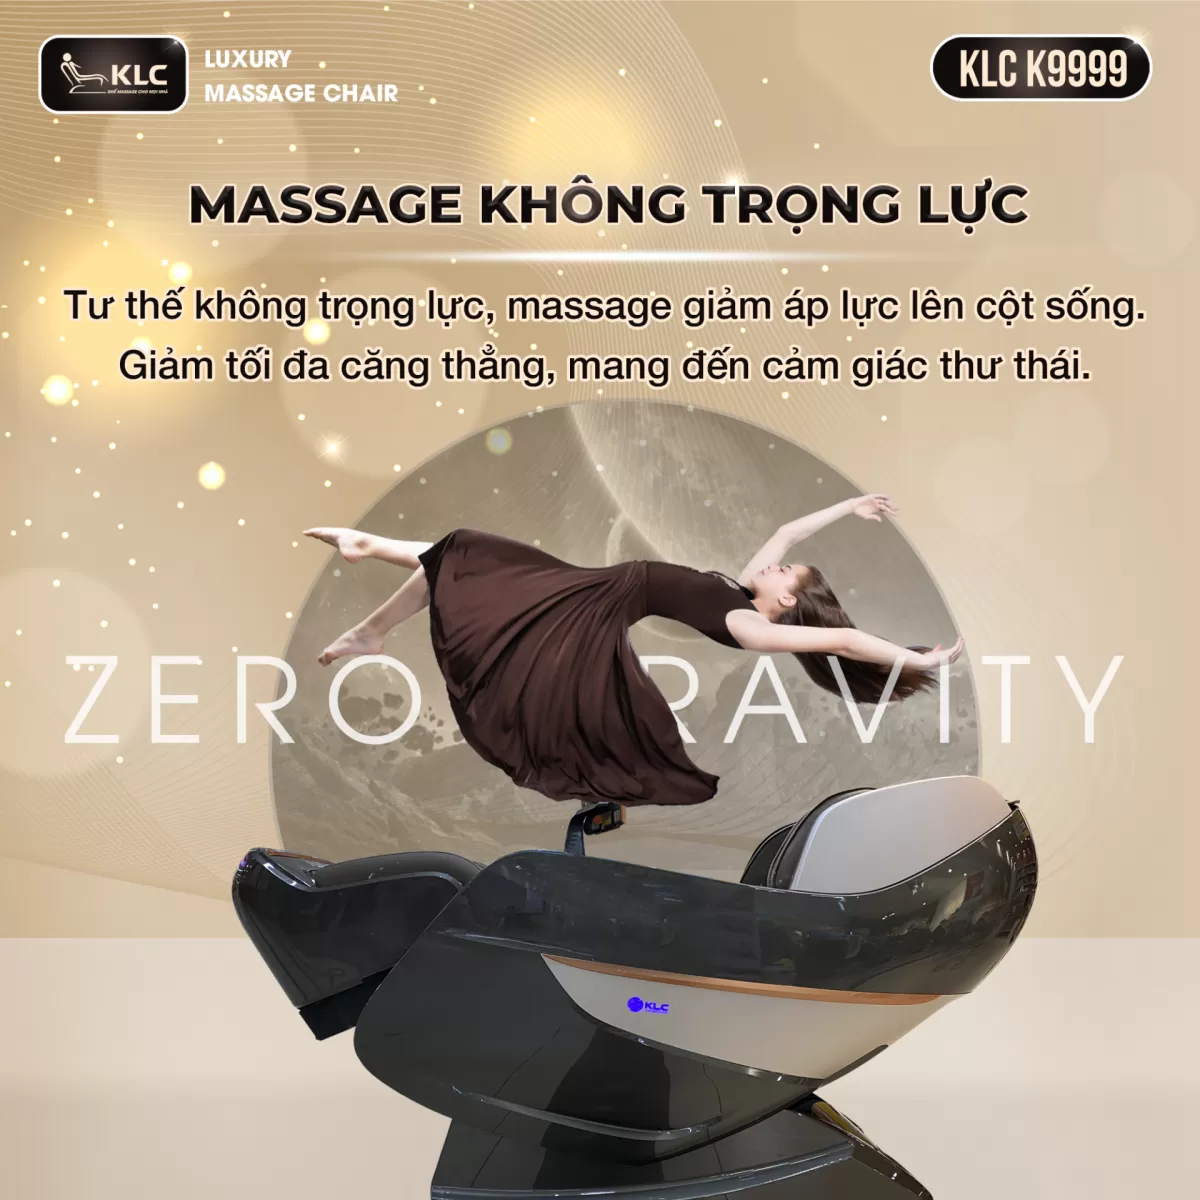 chế độ không trọng lực của Ghế Massage KLC K9999